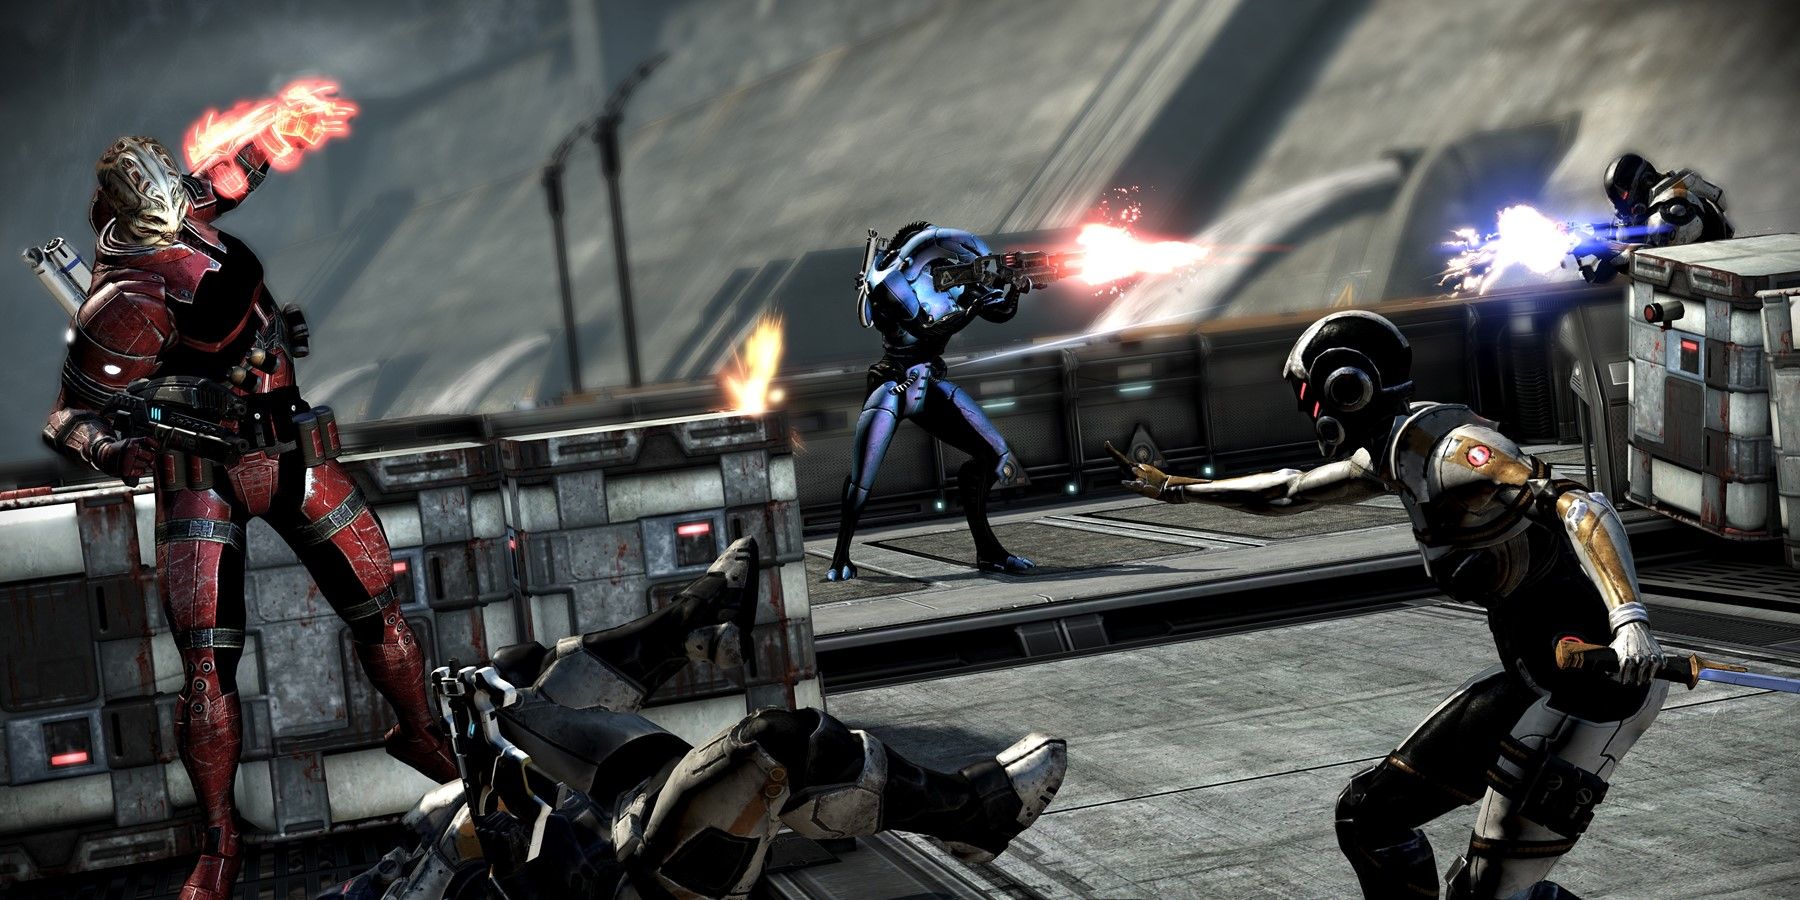 Mass Effect 3 Multiplayer 2021 Servers Still Active